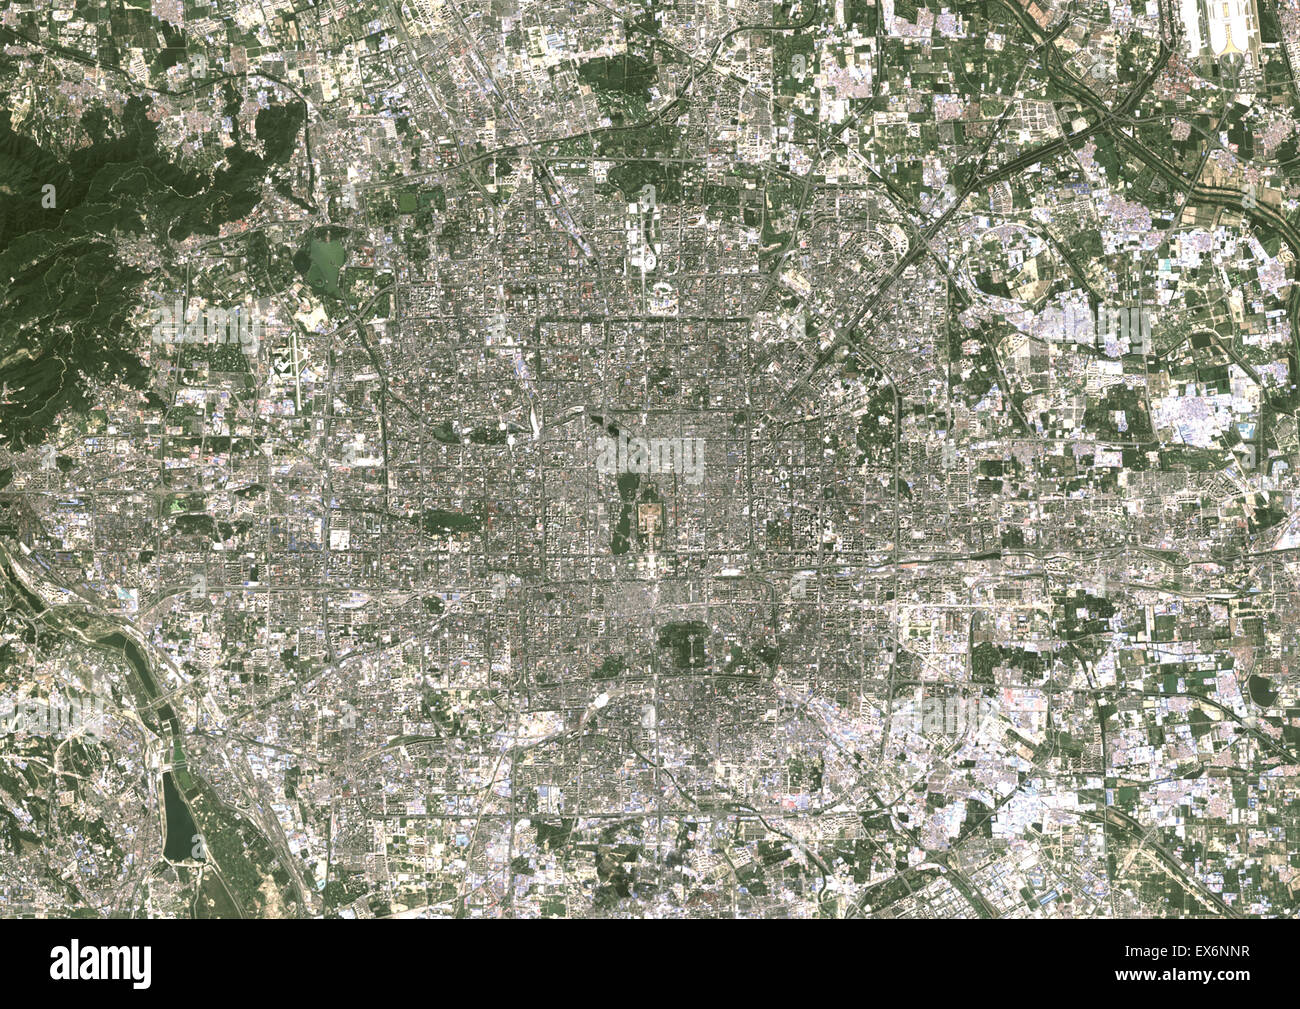 Colore immagine satellitare di Pechino centro città, Cina. Immagine presa sul 25 agosto 2013 con il satellite Landsat 8 dati. Foto Stock